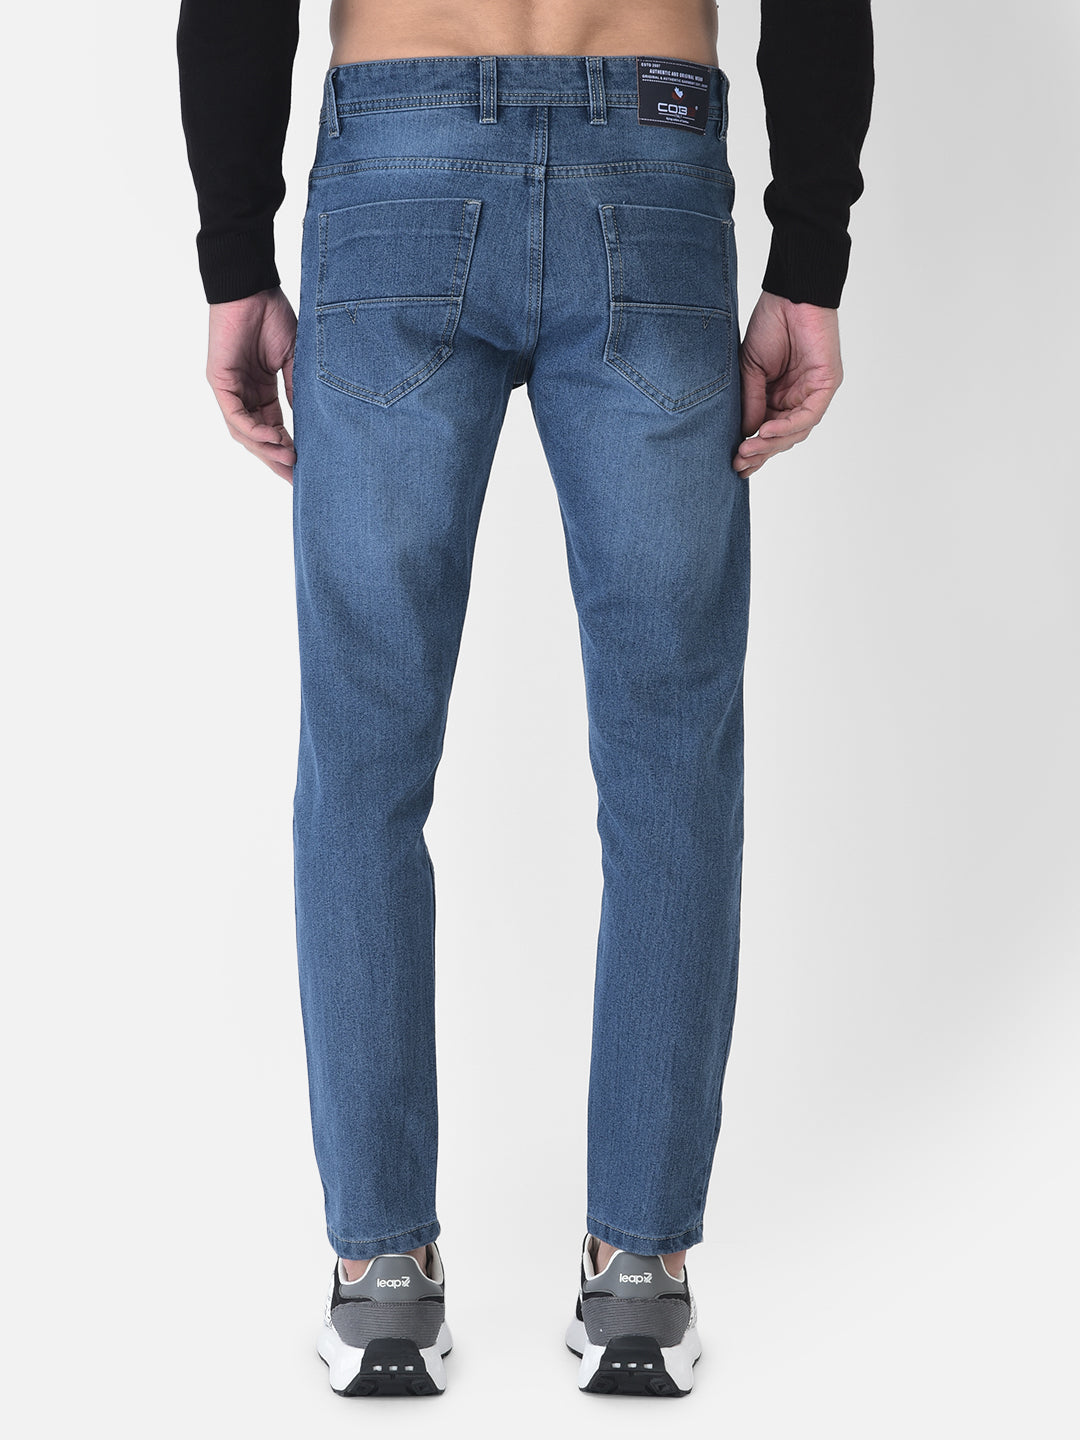 Cobb Dark Blue Narrow Fit Jeans